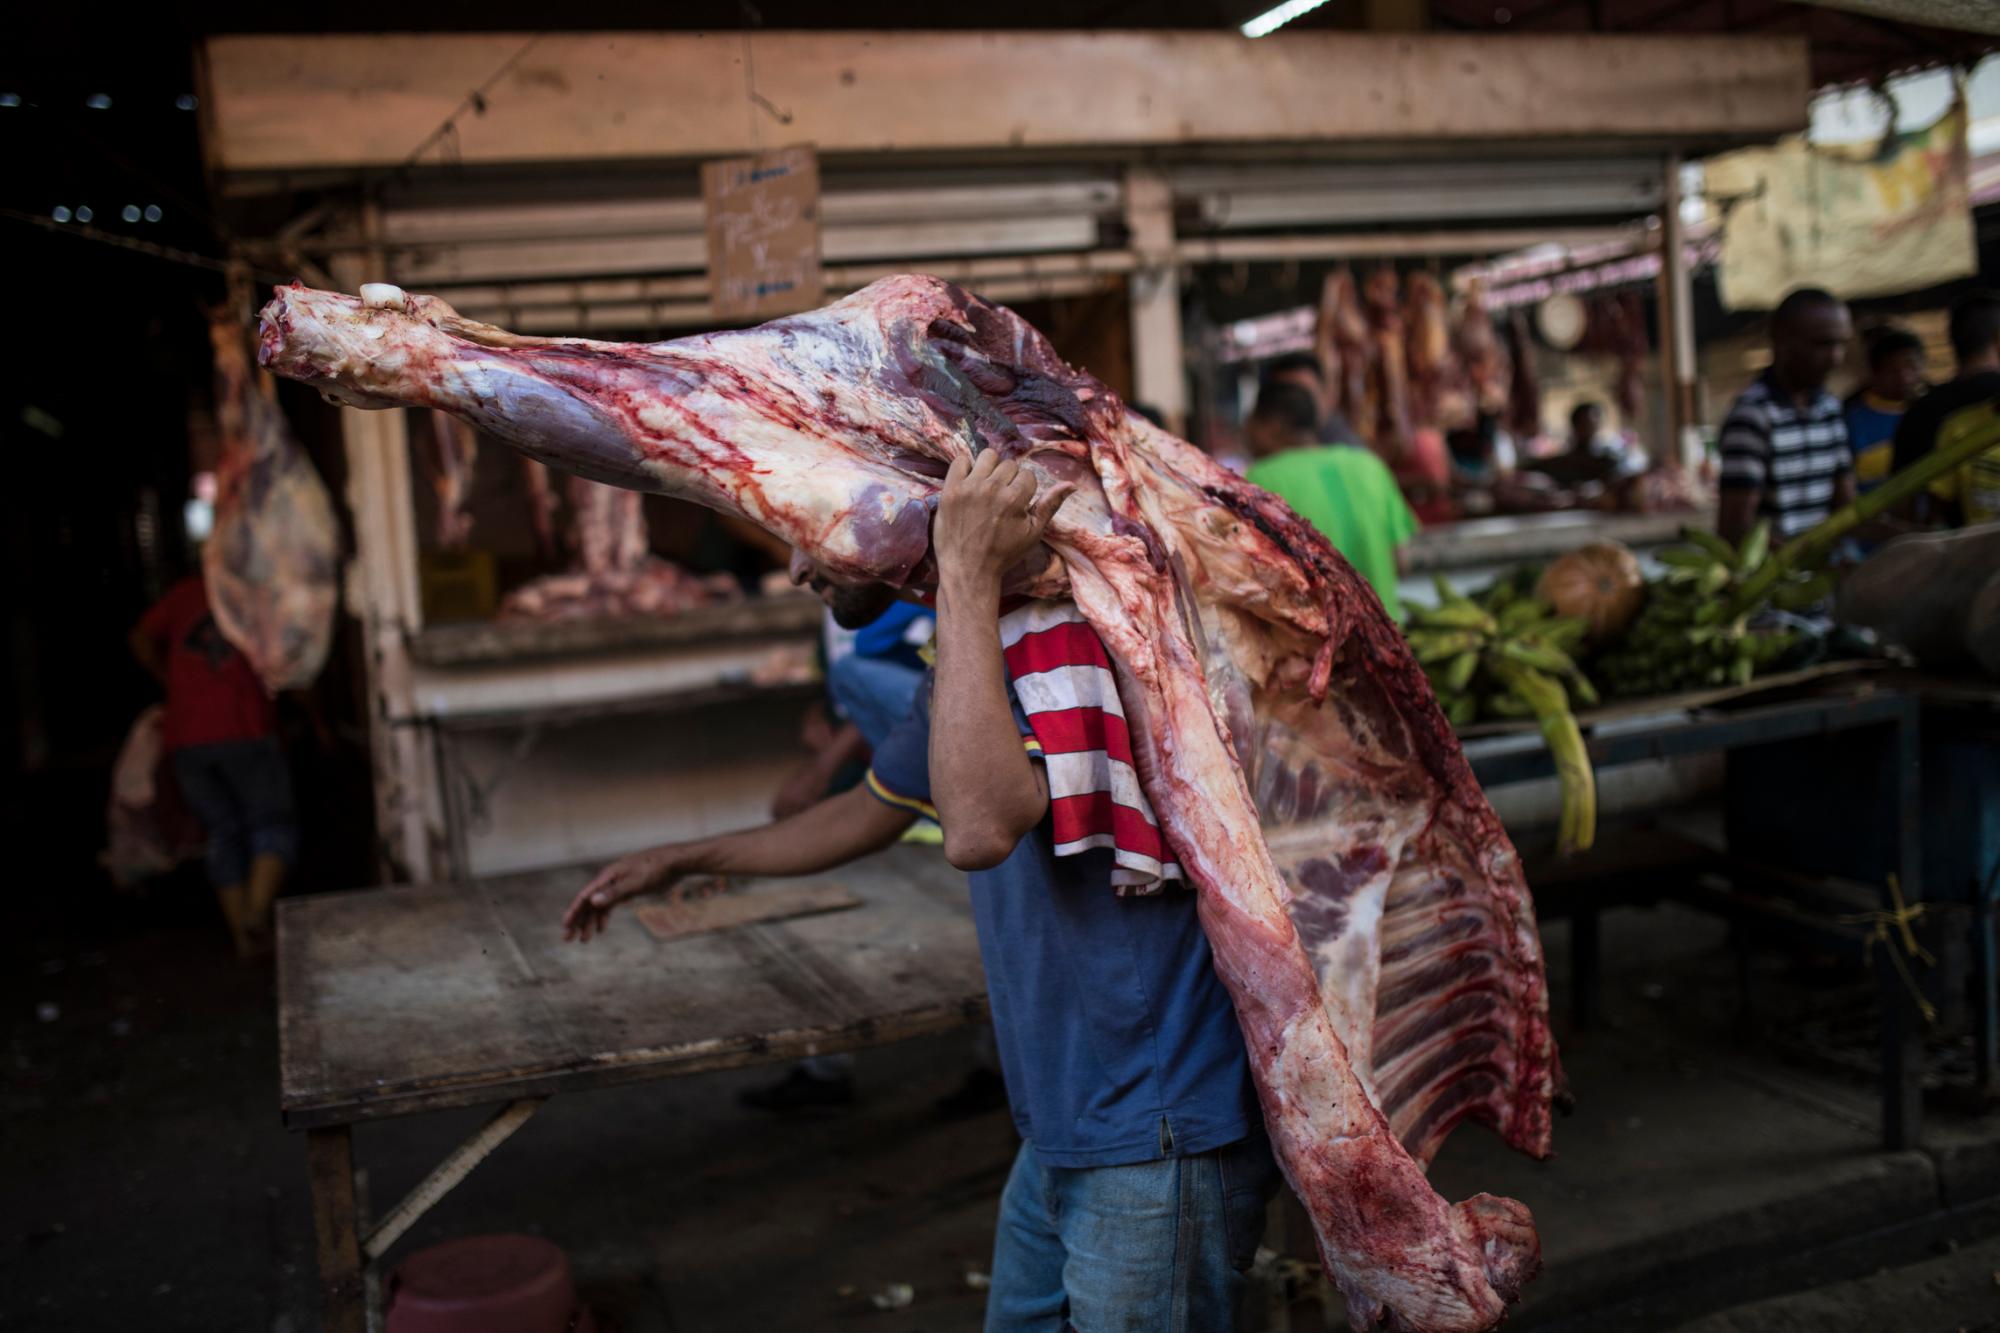 En la imagen, tomada el 16 de mayo de 2019, un vendedor carga con una pieza de carne en una carnicería en un mercado de Maracaibo, Venezuela. Tendrá que venderla pronto ya que, sin refrigeración, los alimentos perecederos se estropean rápidamente en las asfixiantes temperaturas de Maracaibo.